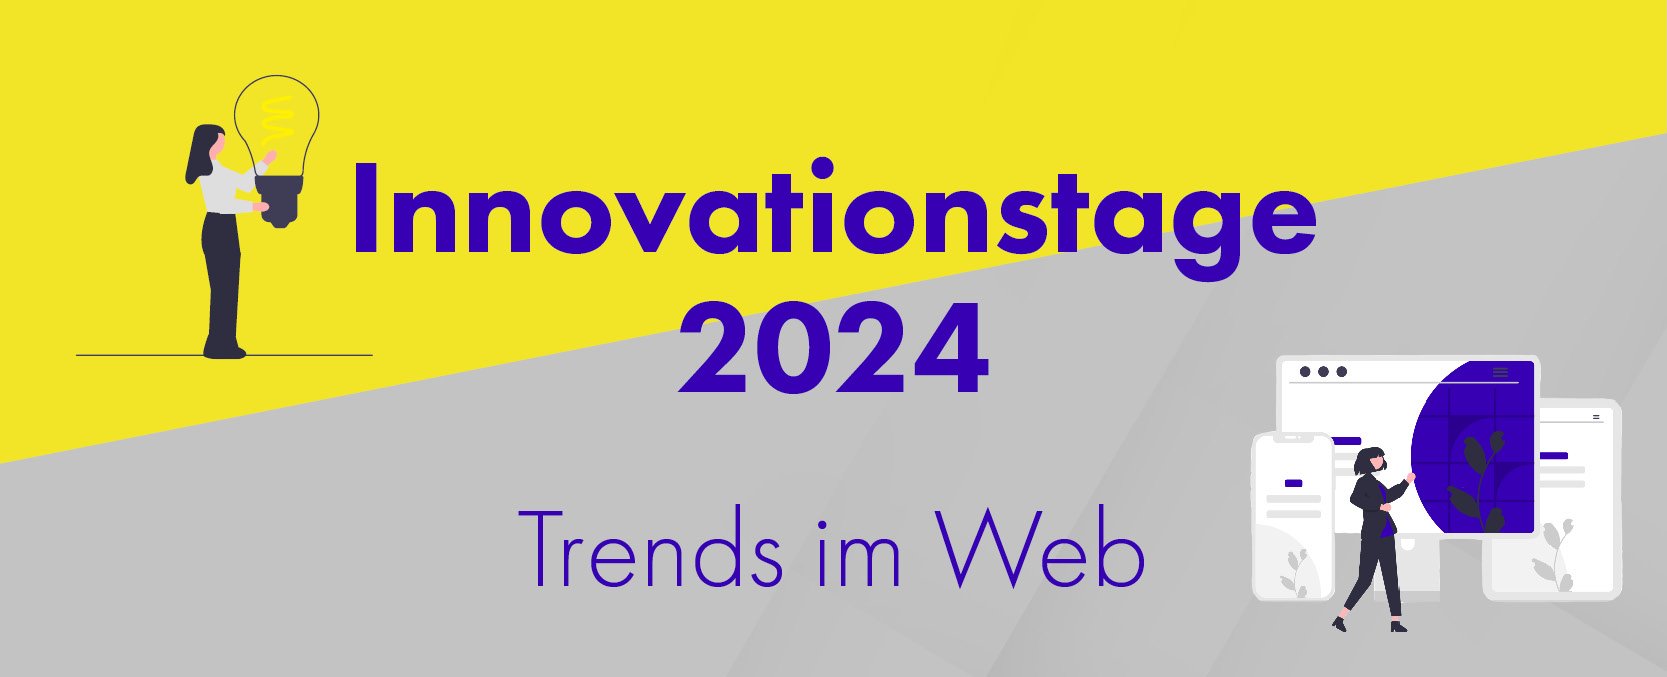 04_640x325px_Bild_HubSpot_Einladung Innovationstage 2024_Trends im Web_2